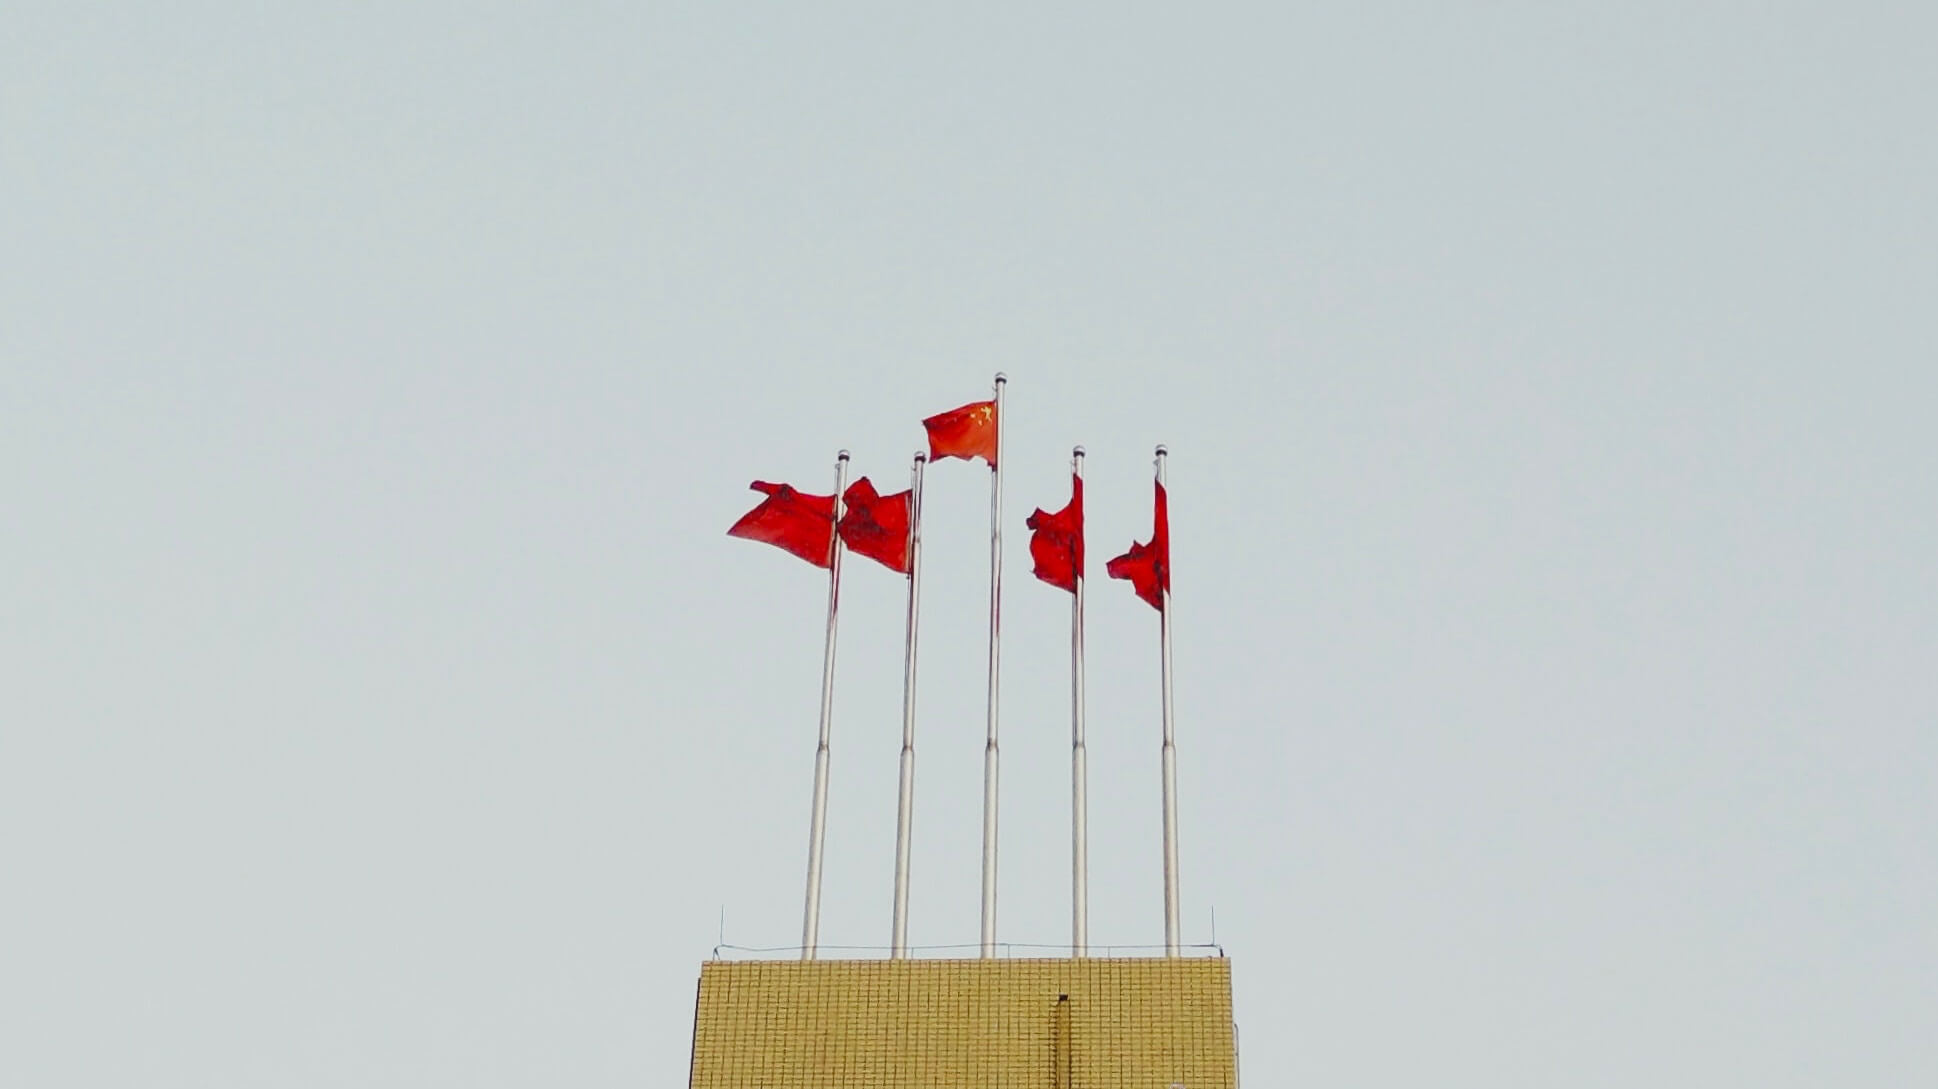 Особенности китайской криптовалюты. Флаги Китая. Источник: Unsplash. Фото.